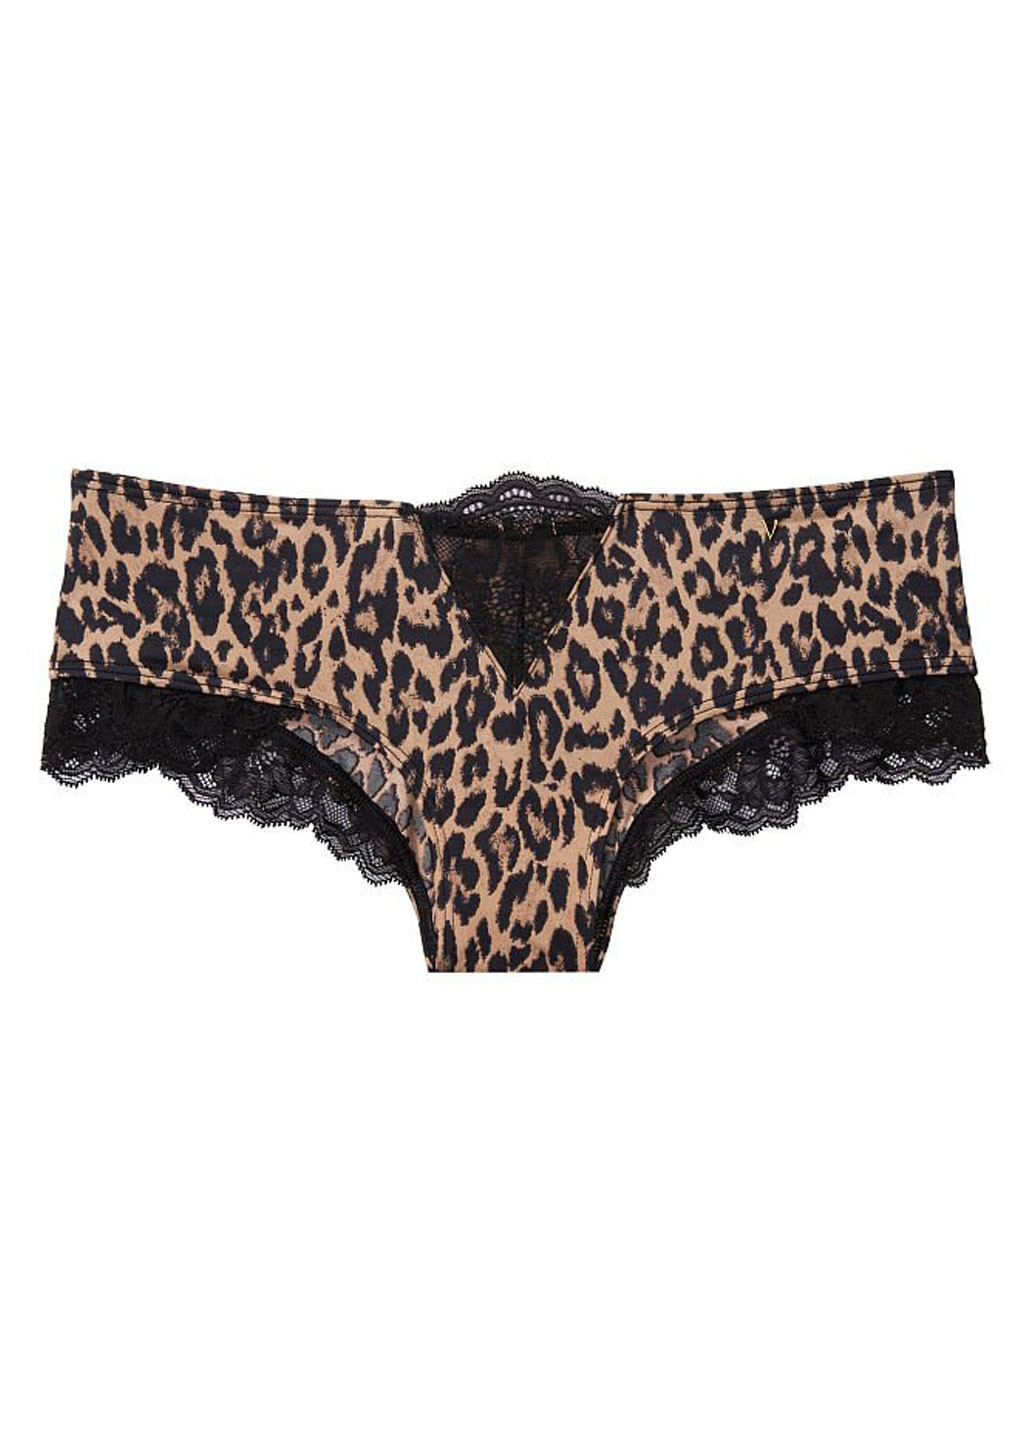 Трусы Victoria's Secret бикини леопардовые темно-бежевые повседневные полиамид